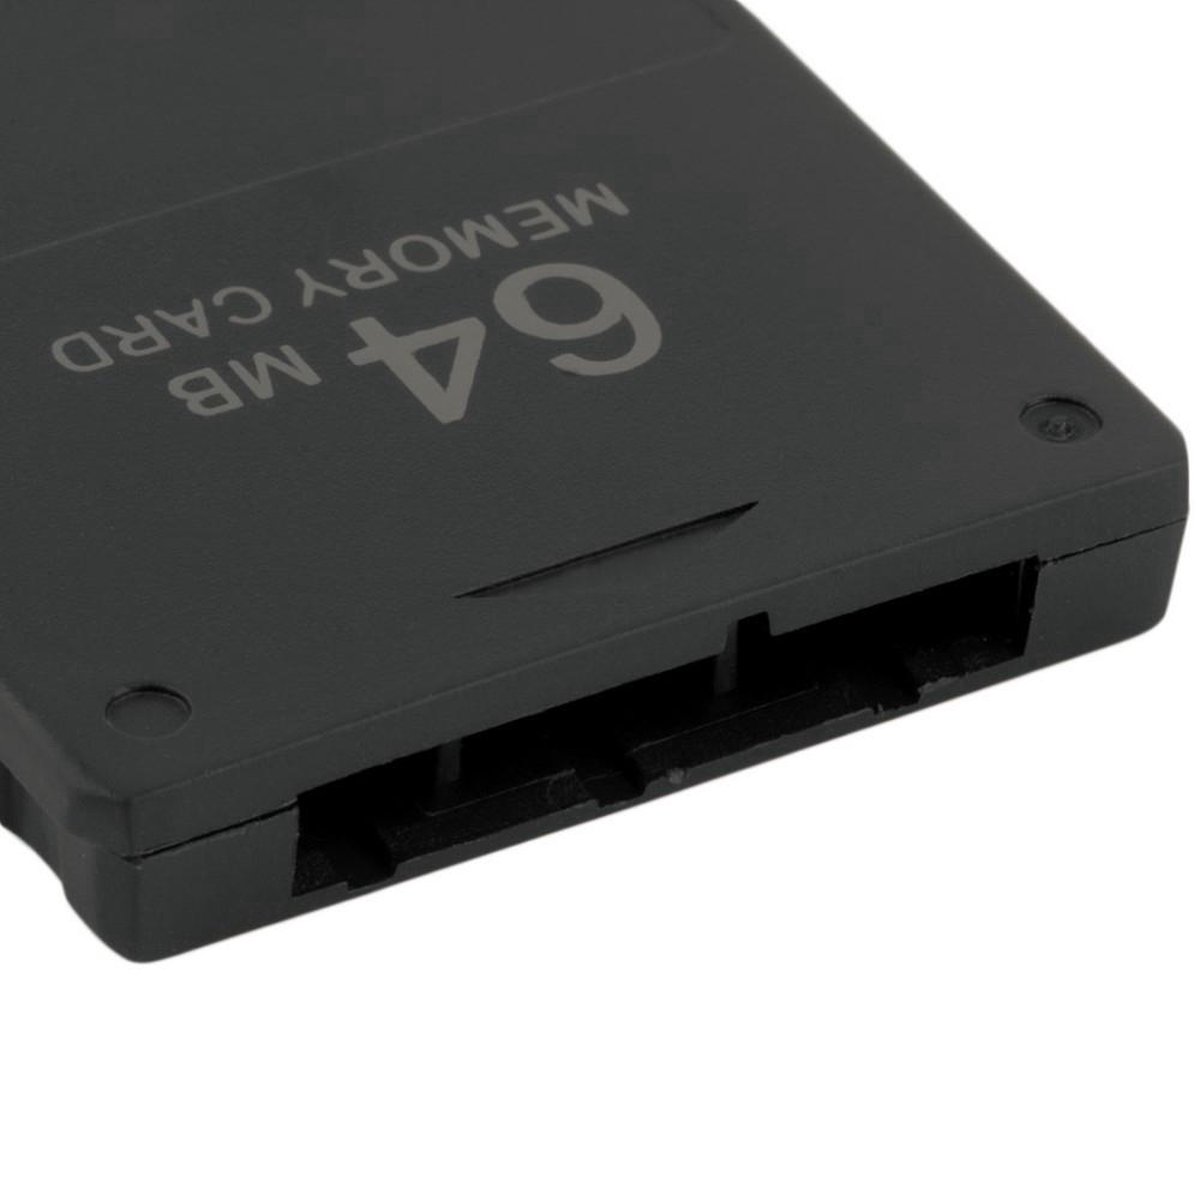 64MB geheugenkaart (memory card) voor Playstation 2 - PS2 Geschikt